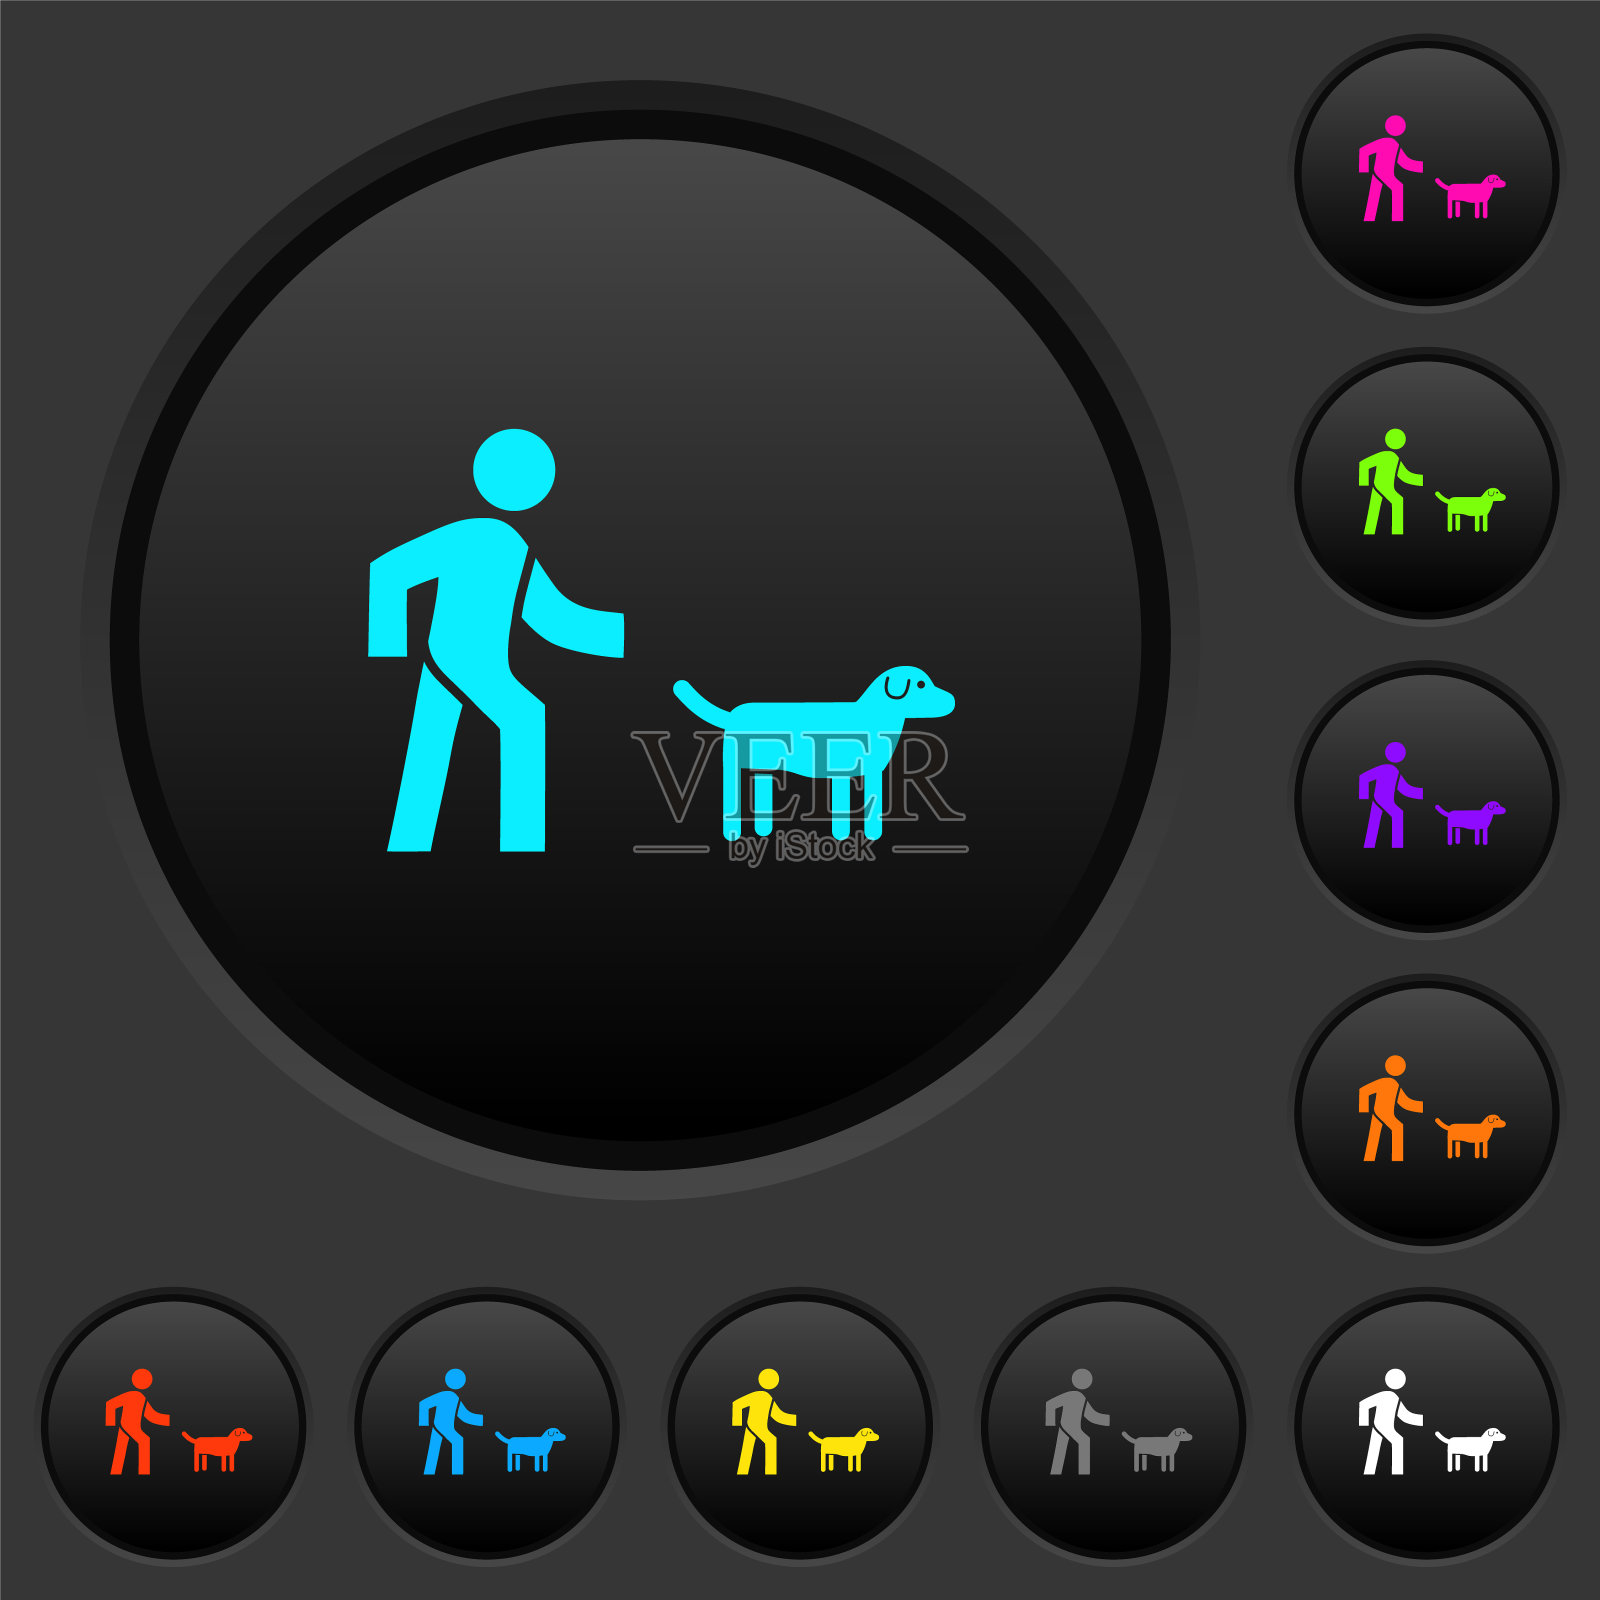 遛狗的黑色按钮和彩色图标图标素材